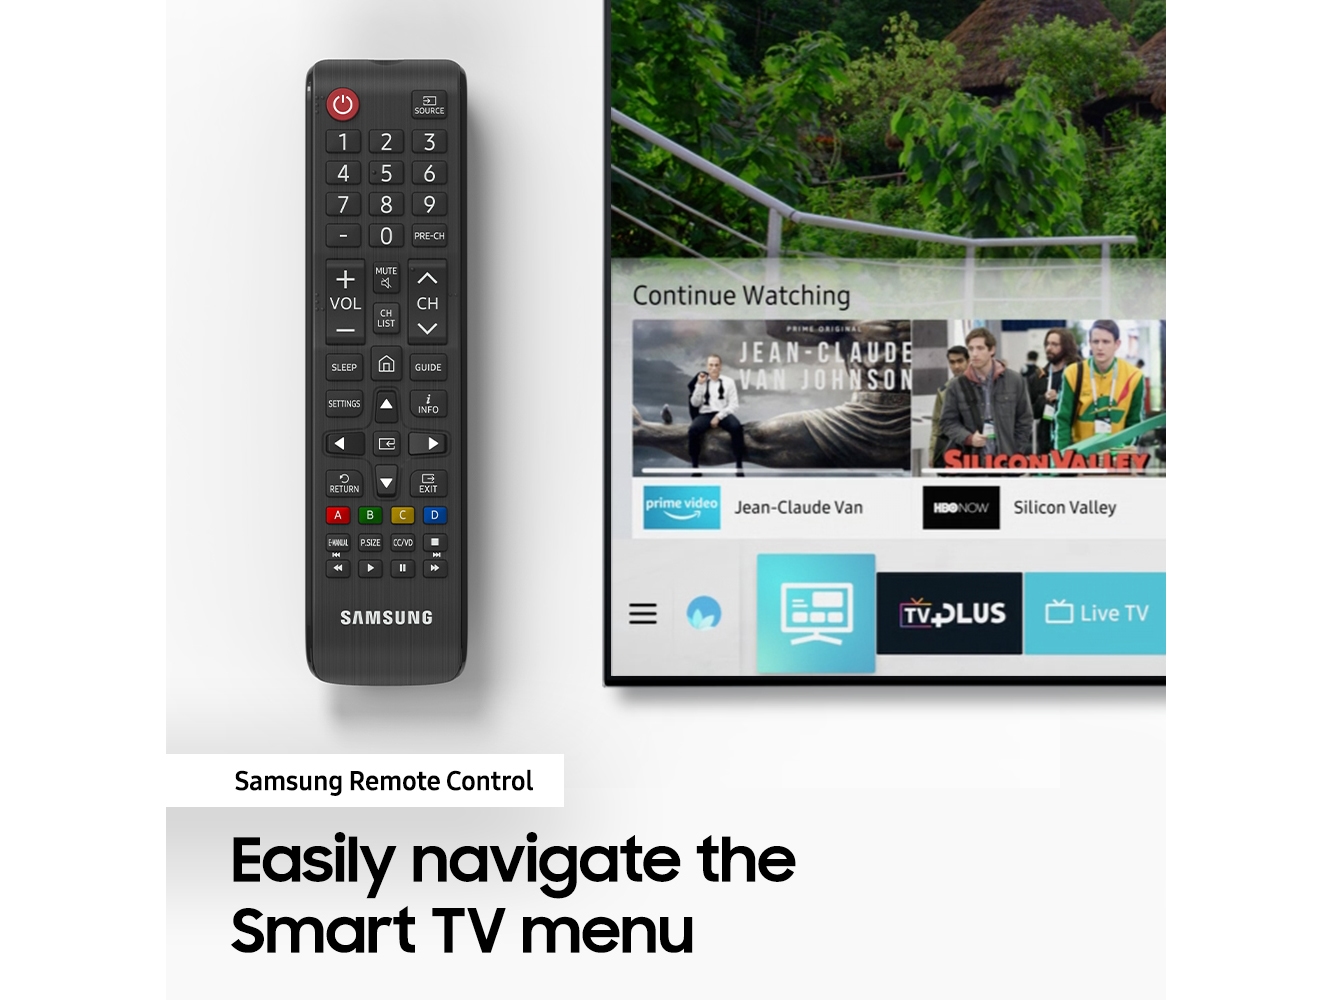 conectar pc a smart tv samsung por wifi direct